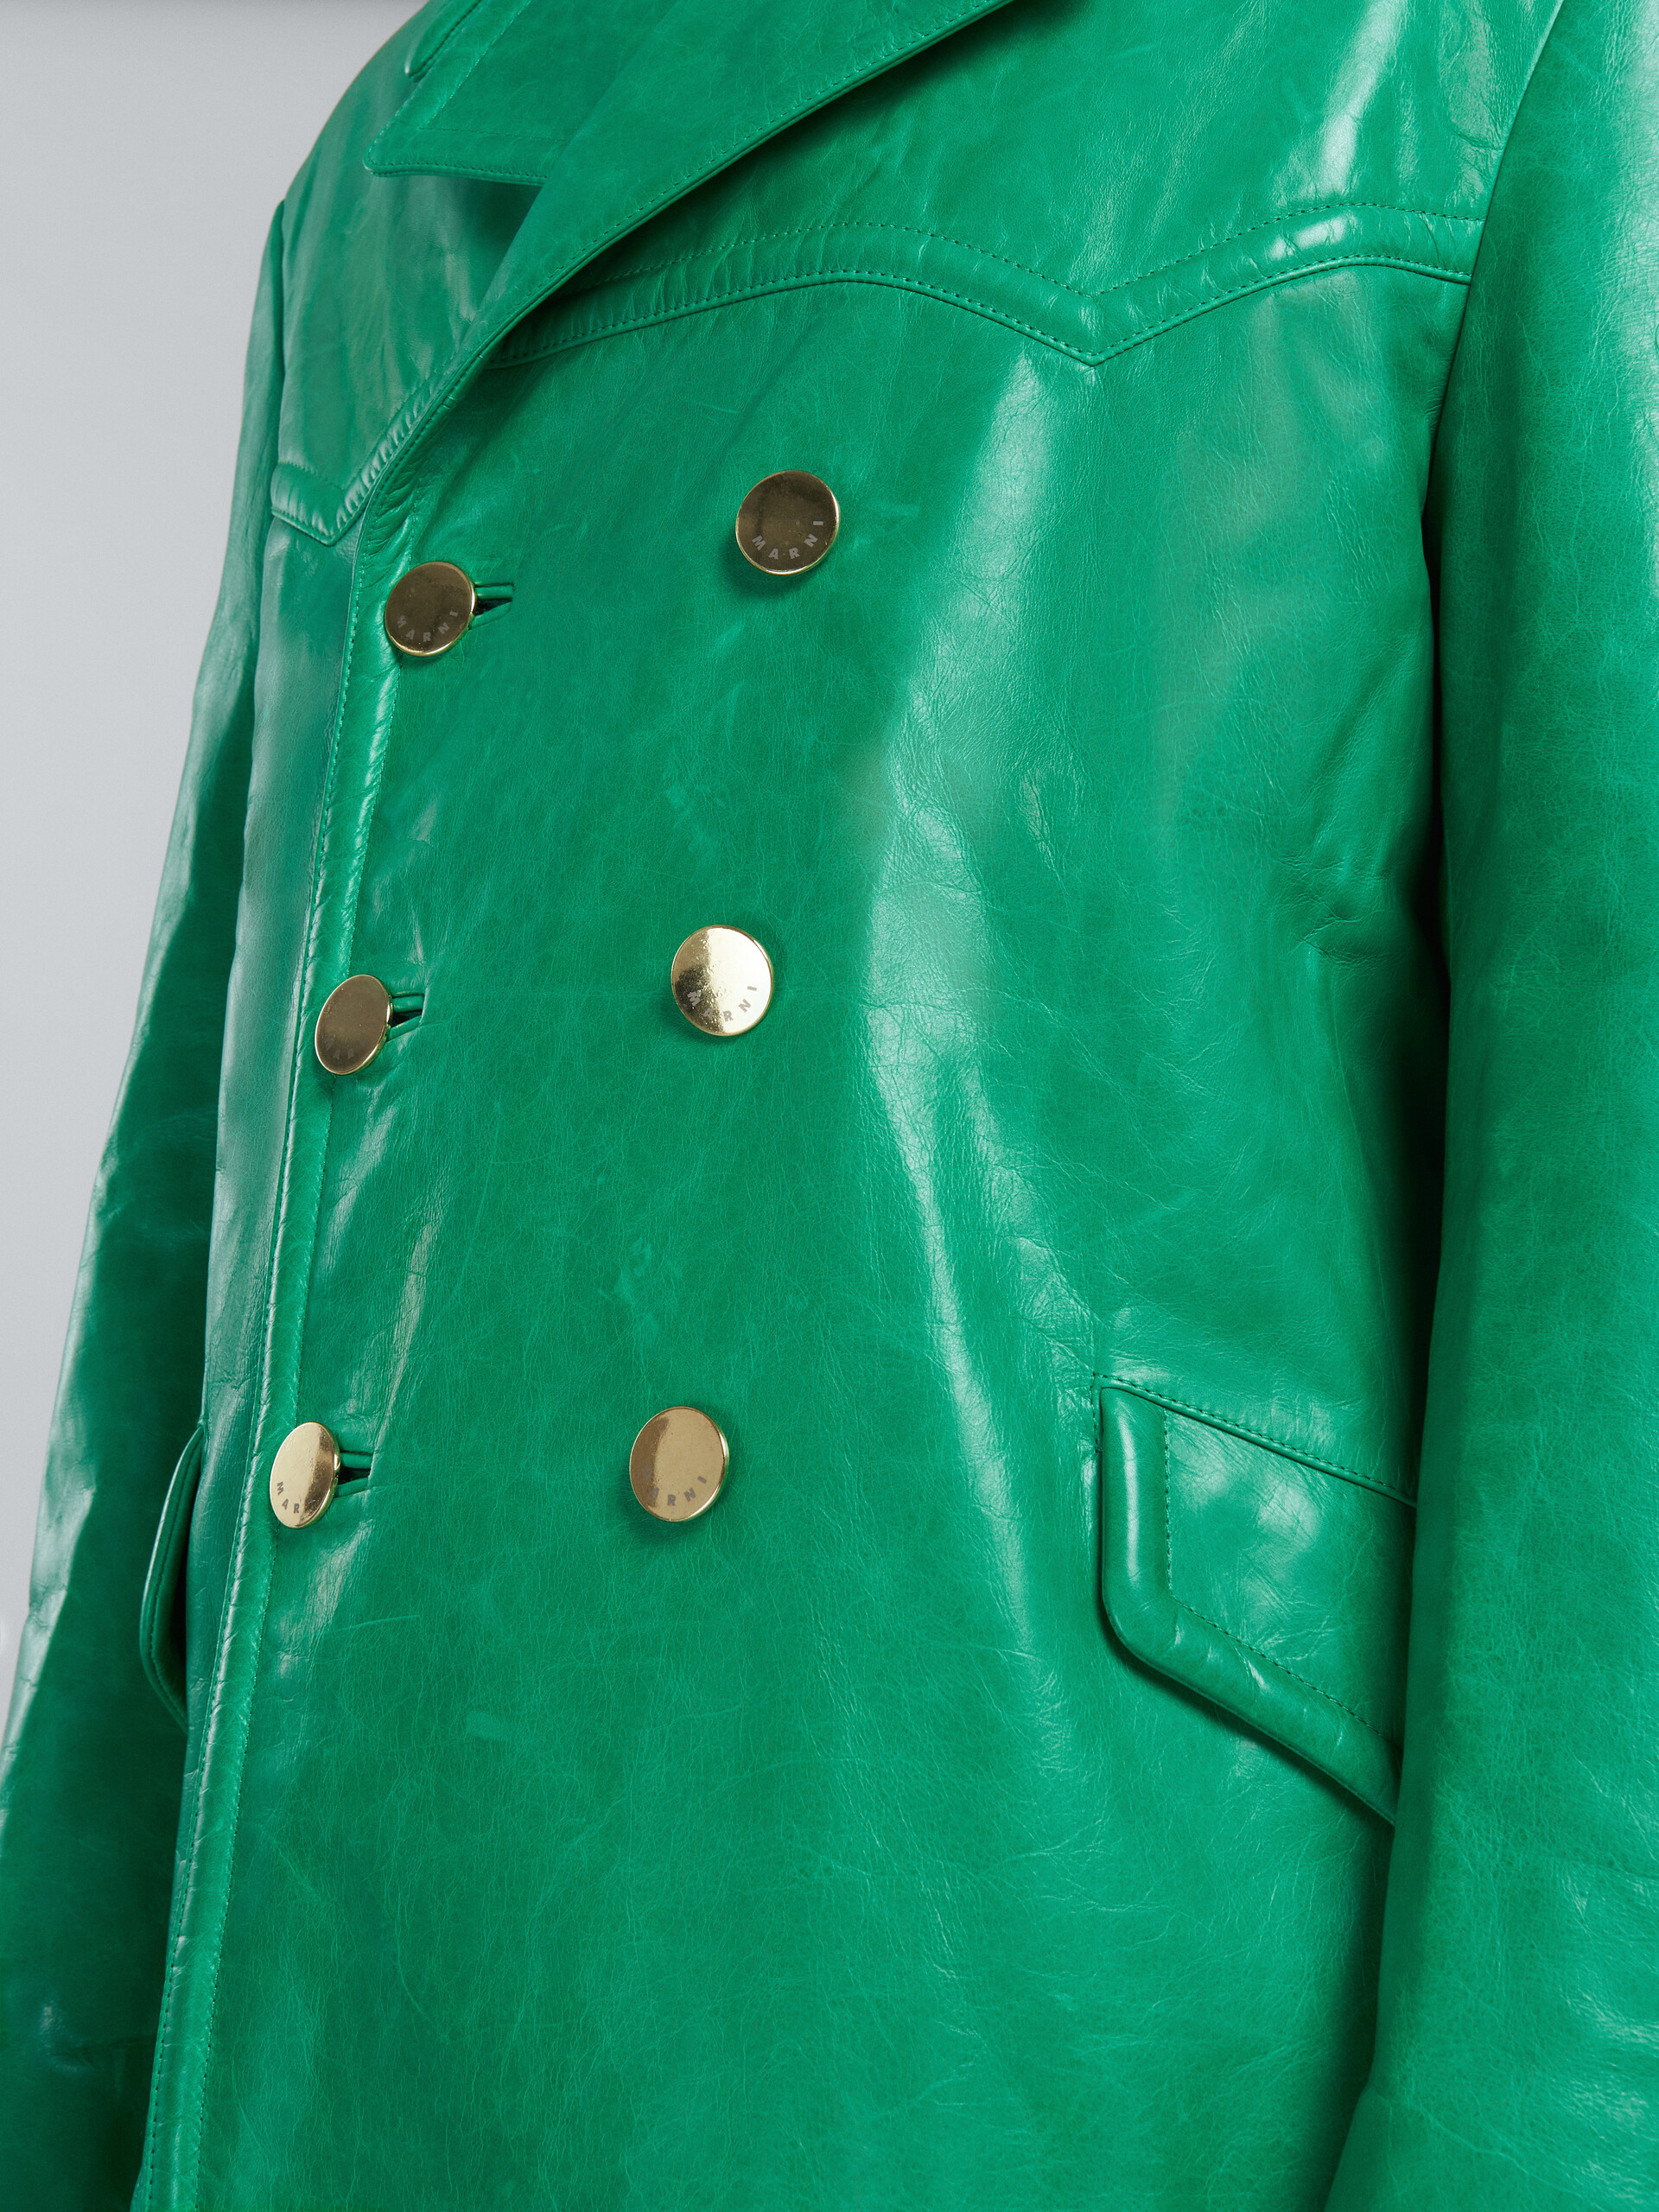 Doppelreihige Jacke aus glänzendem grünem Leder - Mäntel - Image 5